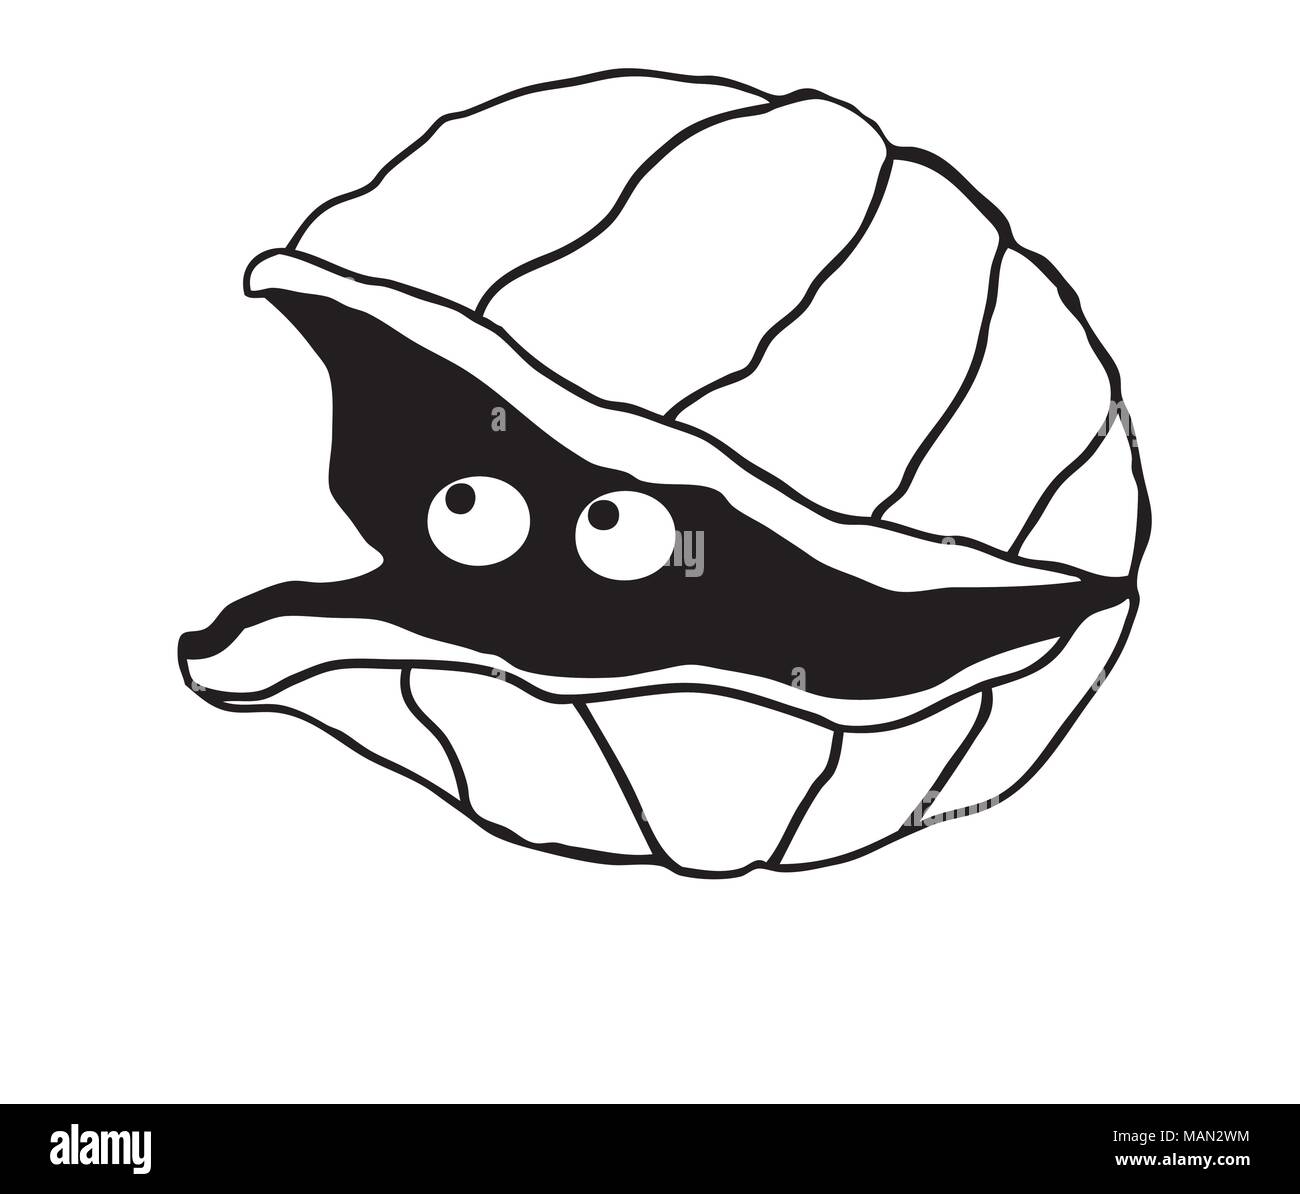 Cute Abbildung eines einfachen Clam mit Augen Blick aus der Shell. Stock Vektor